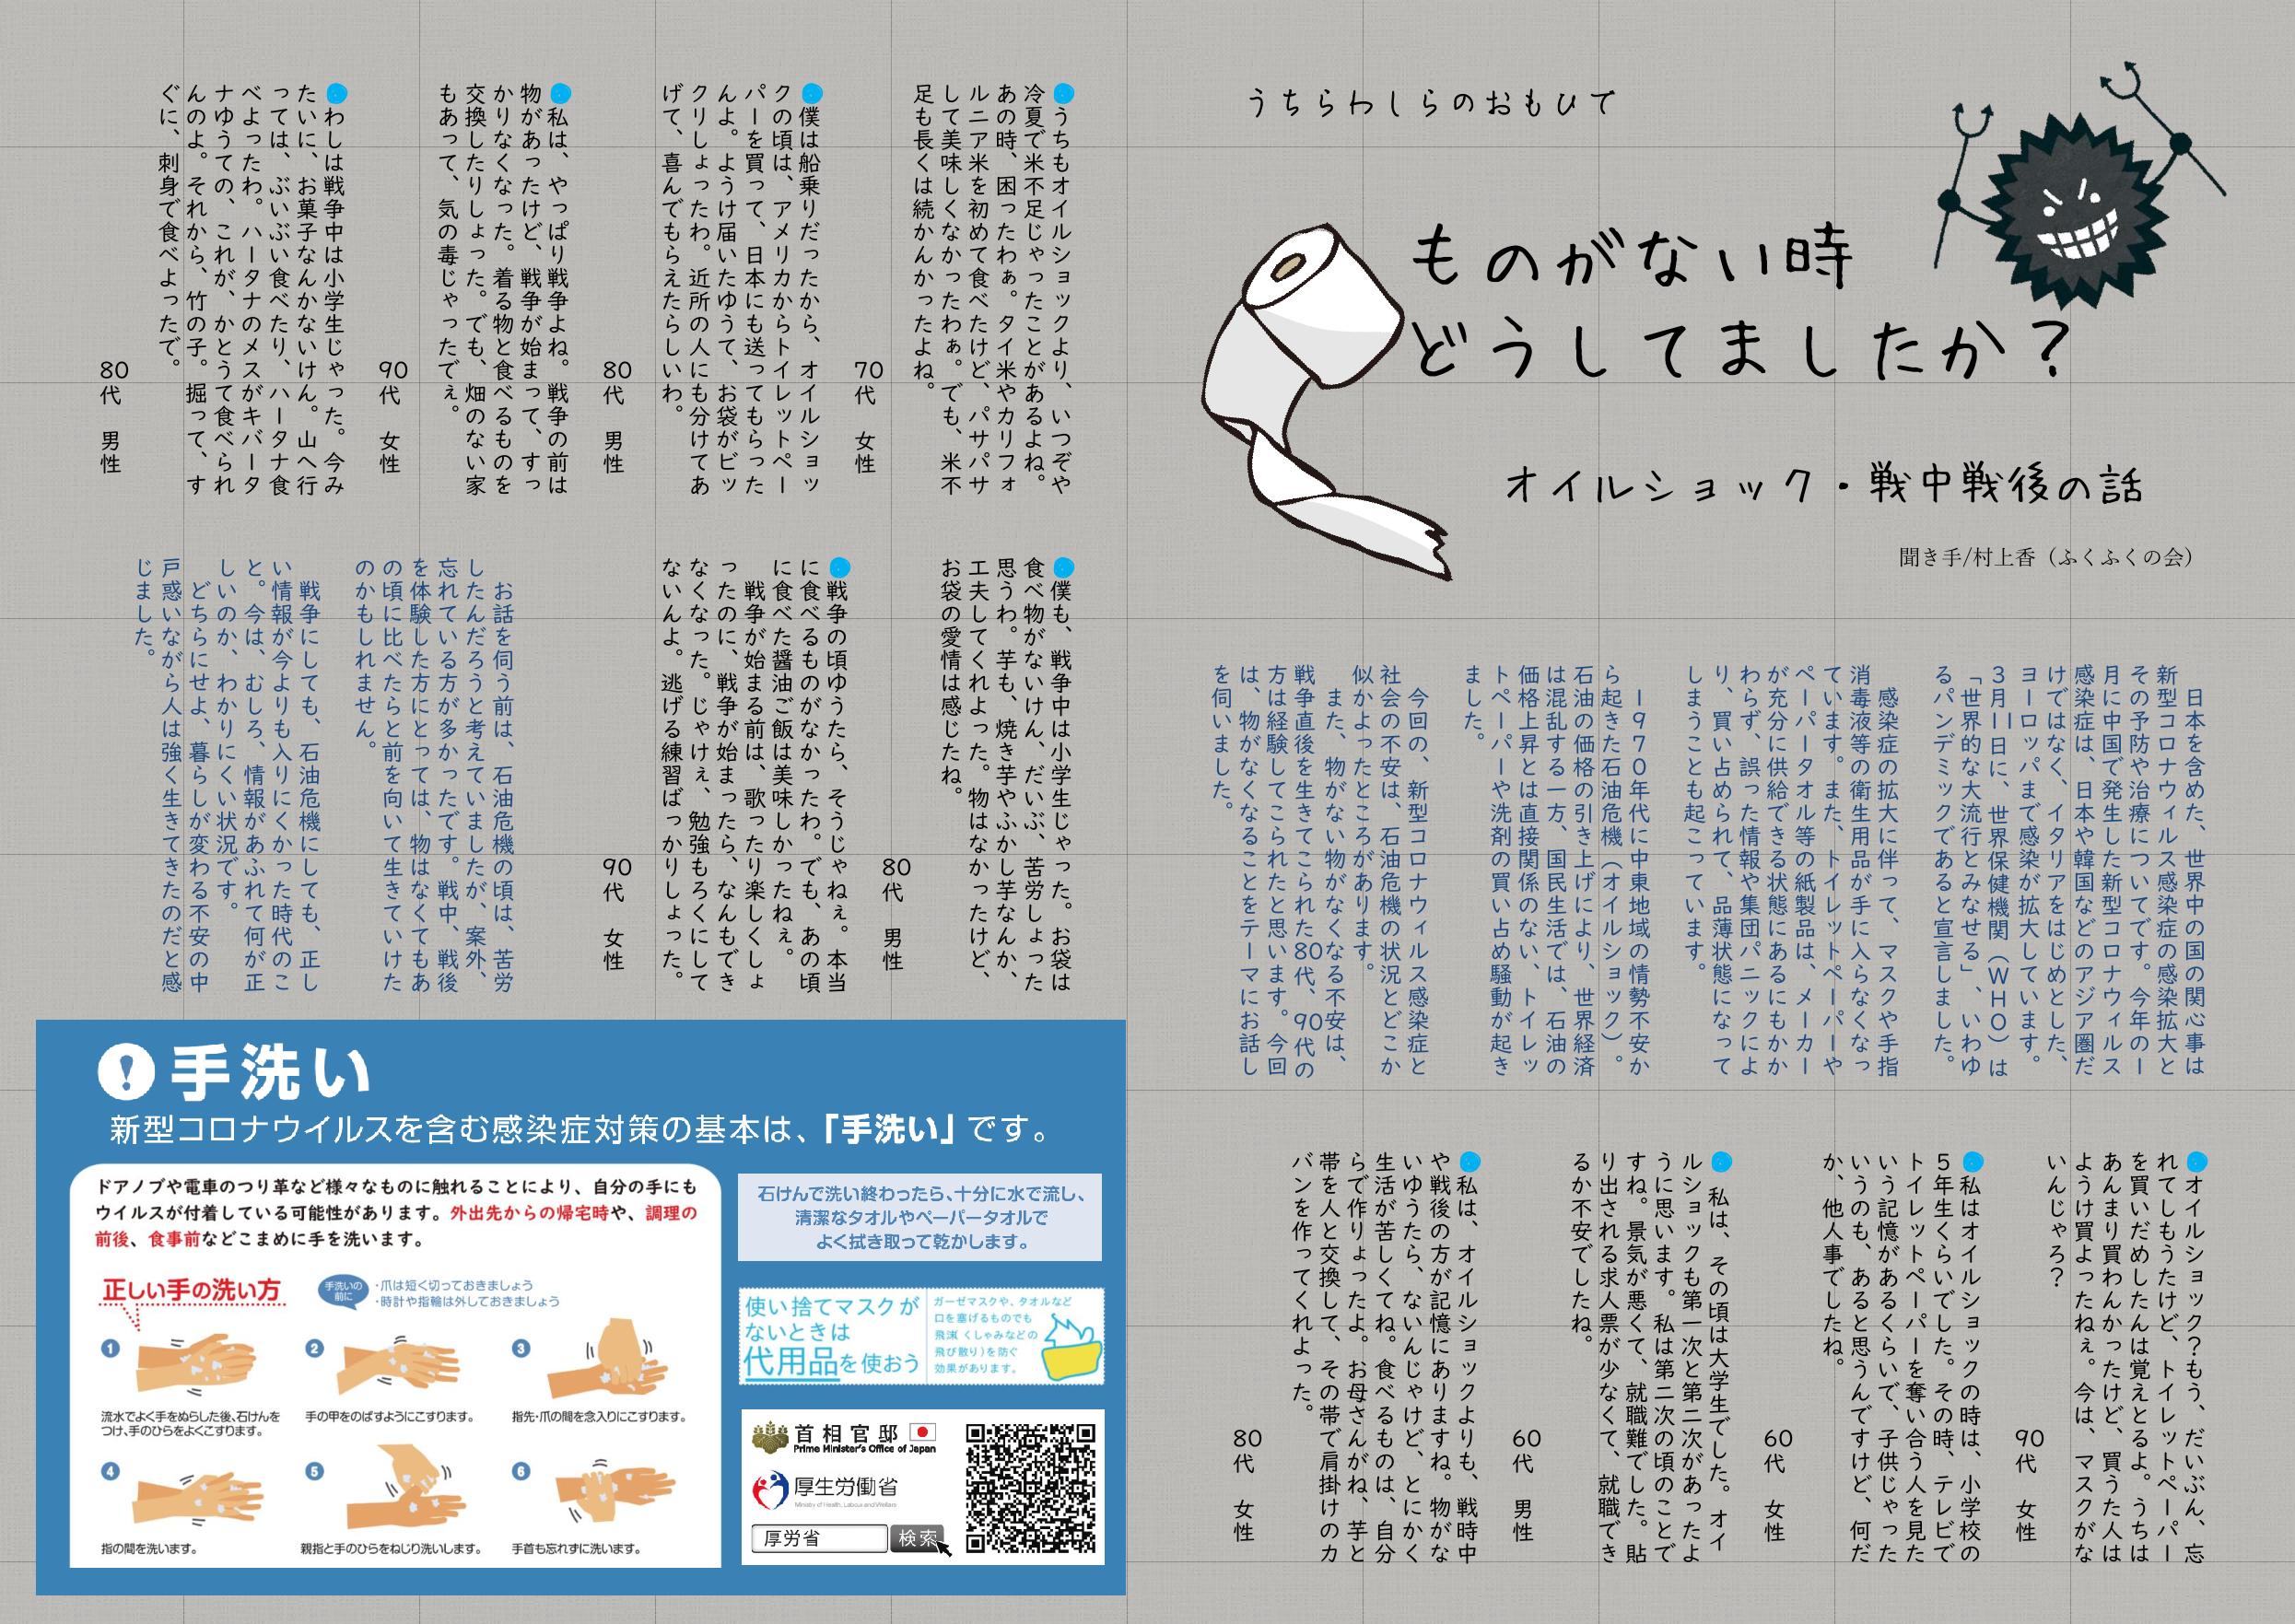 http://fukufukunokai.com/newsletter/images/3%E6%9C%88%E5%8F%B7_cropped_2.jpeg